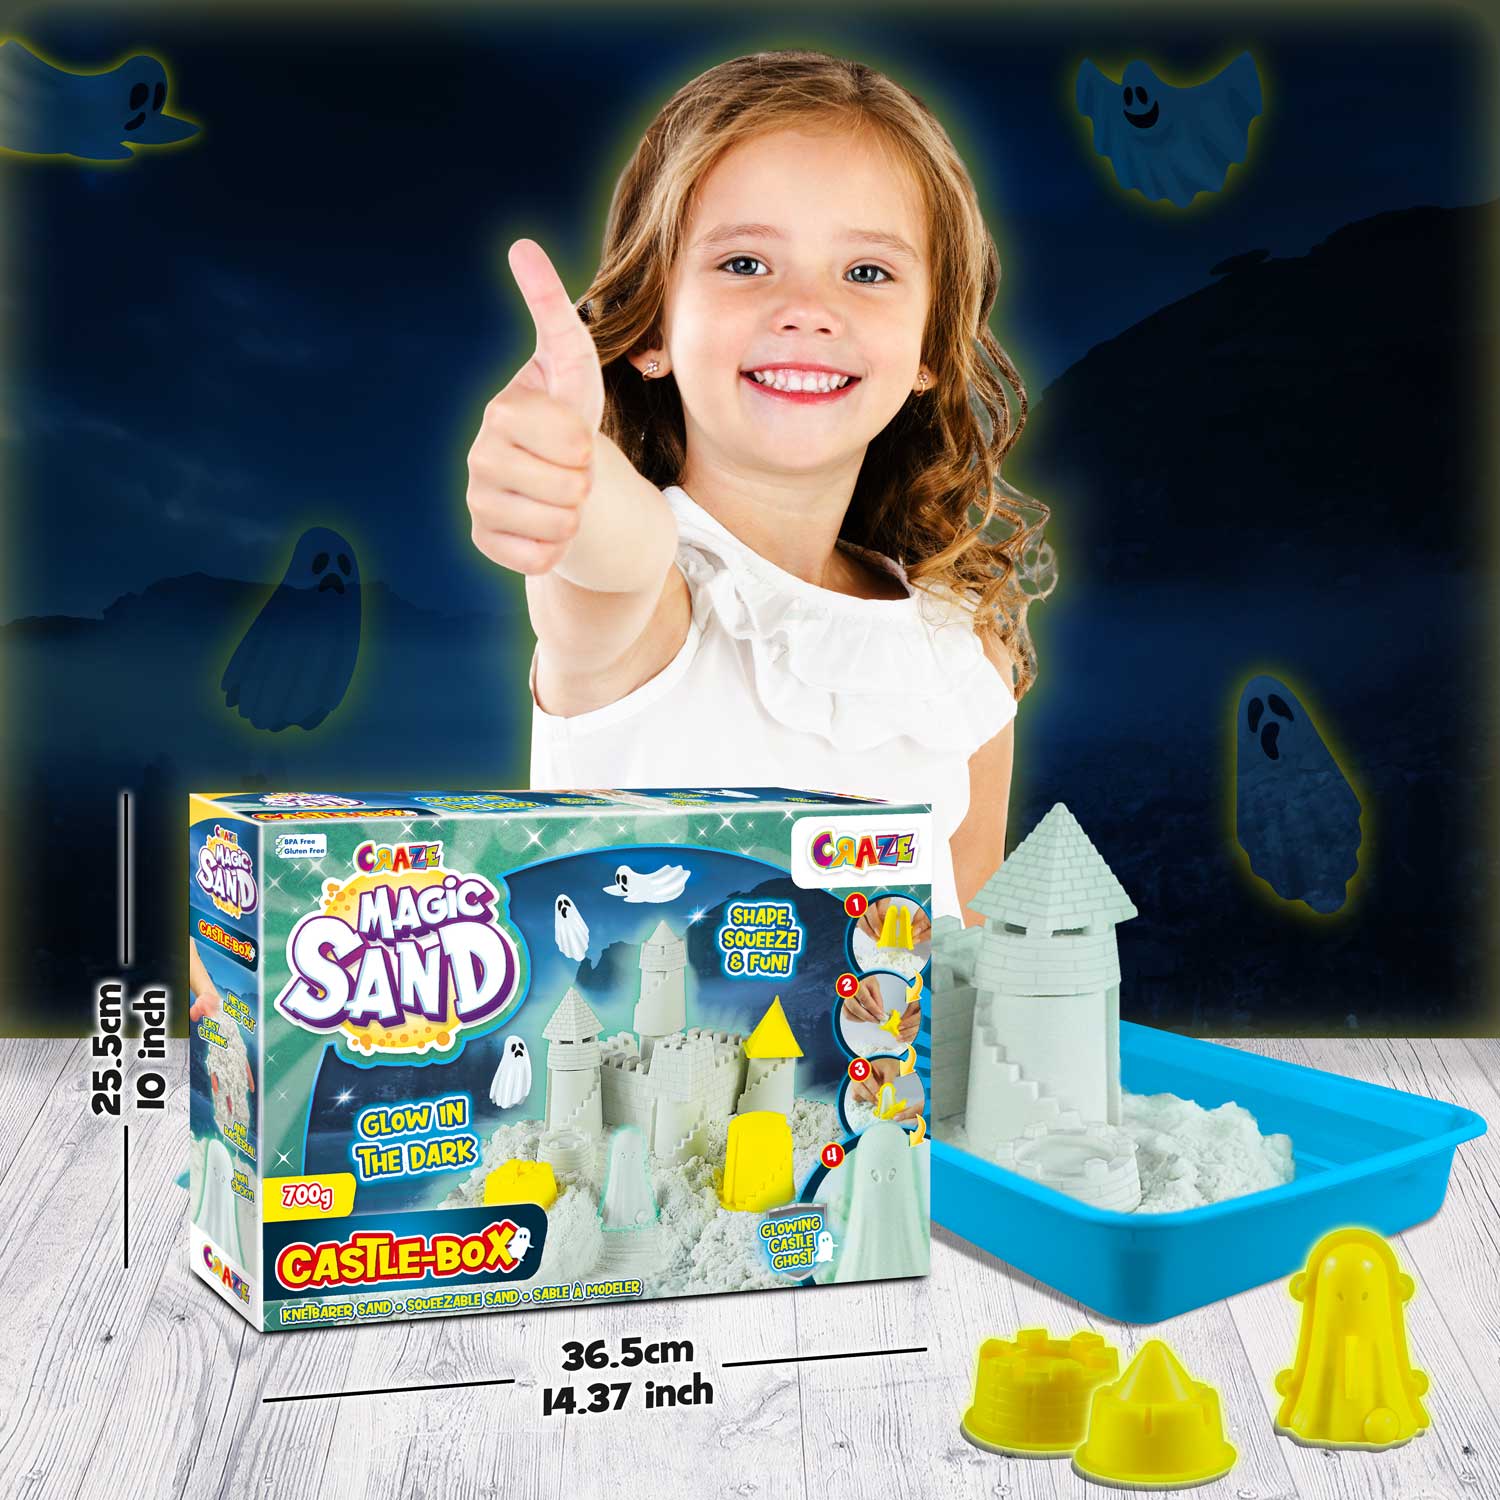 CRAZE GmbH MAGIC SAND Lot de recharge pour sable cinétique 250 g Sable  magique coloré pour kit de bricolage enfants Sable magique Couleurs  assorties